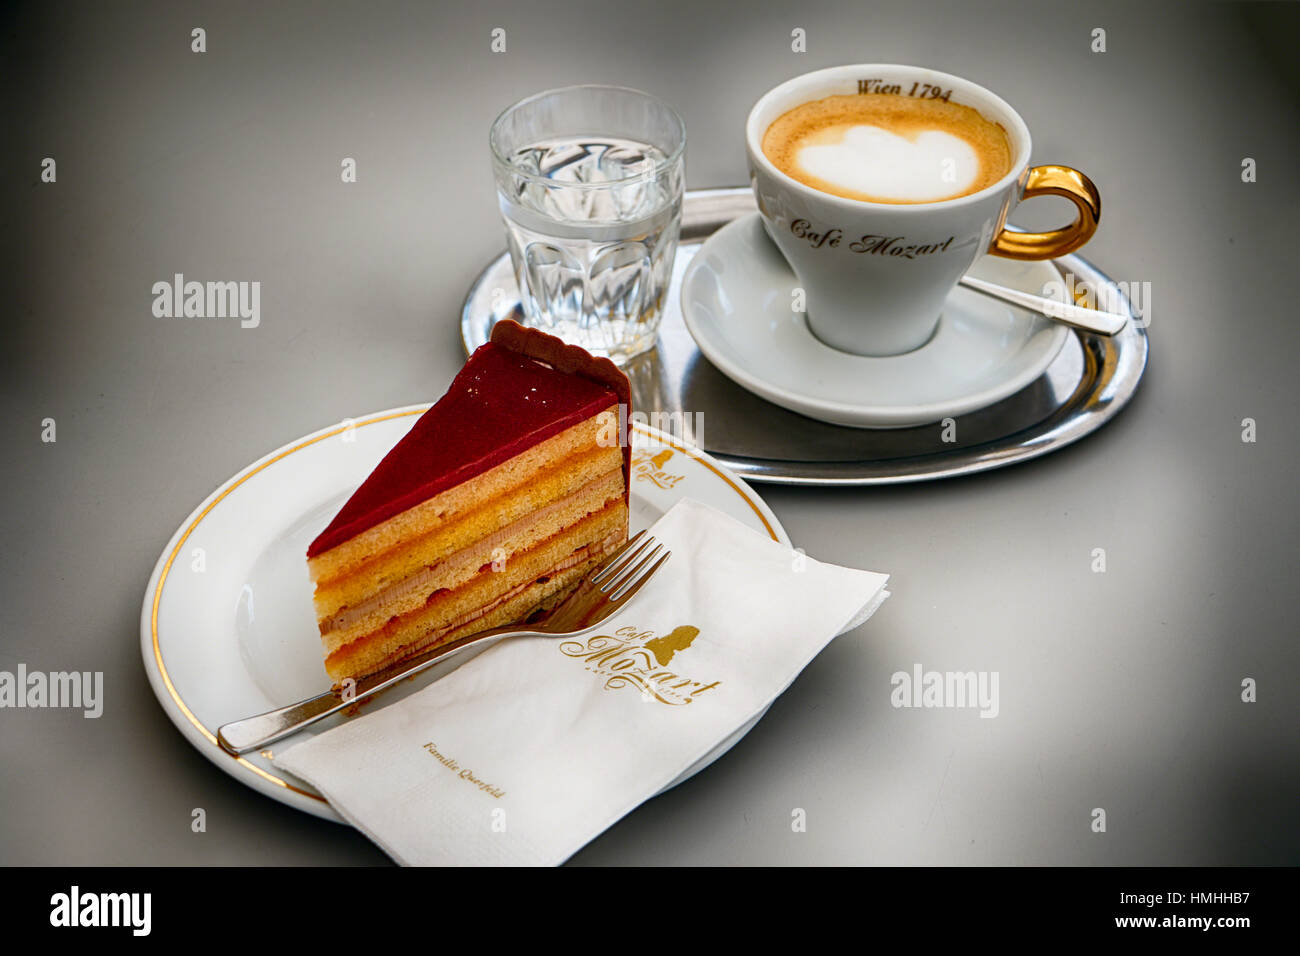 Vue rapprochée d'une Tarte fine de Landtmann avec un Espresso Café et eau minérale, café Mozart, Vienne, Autriche Banque D'Images